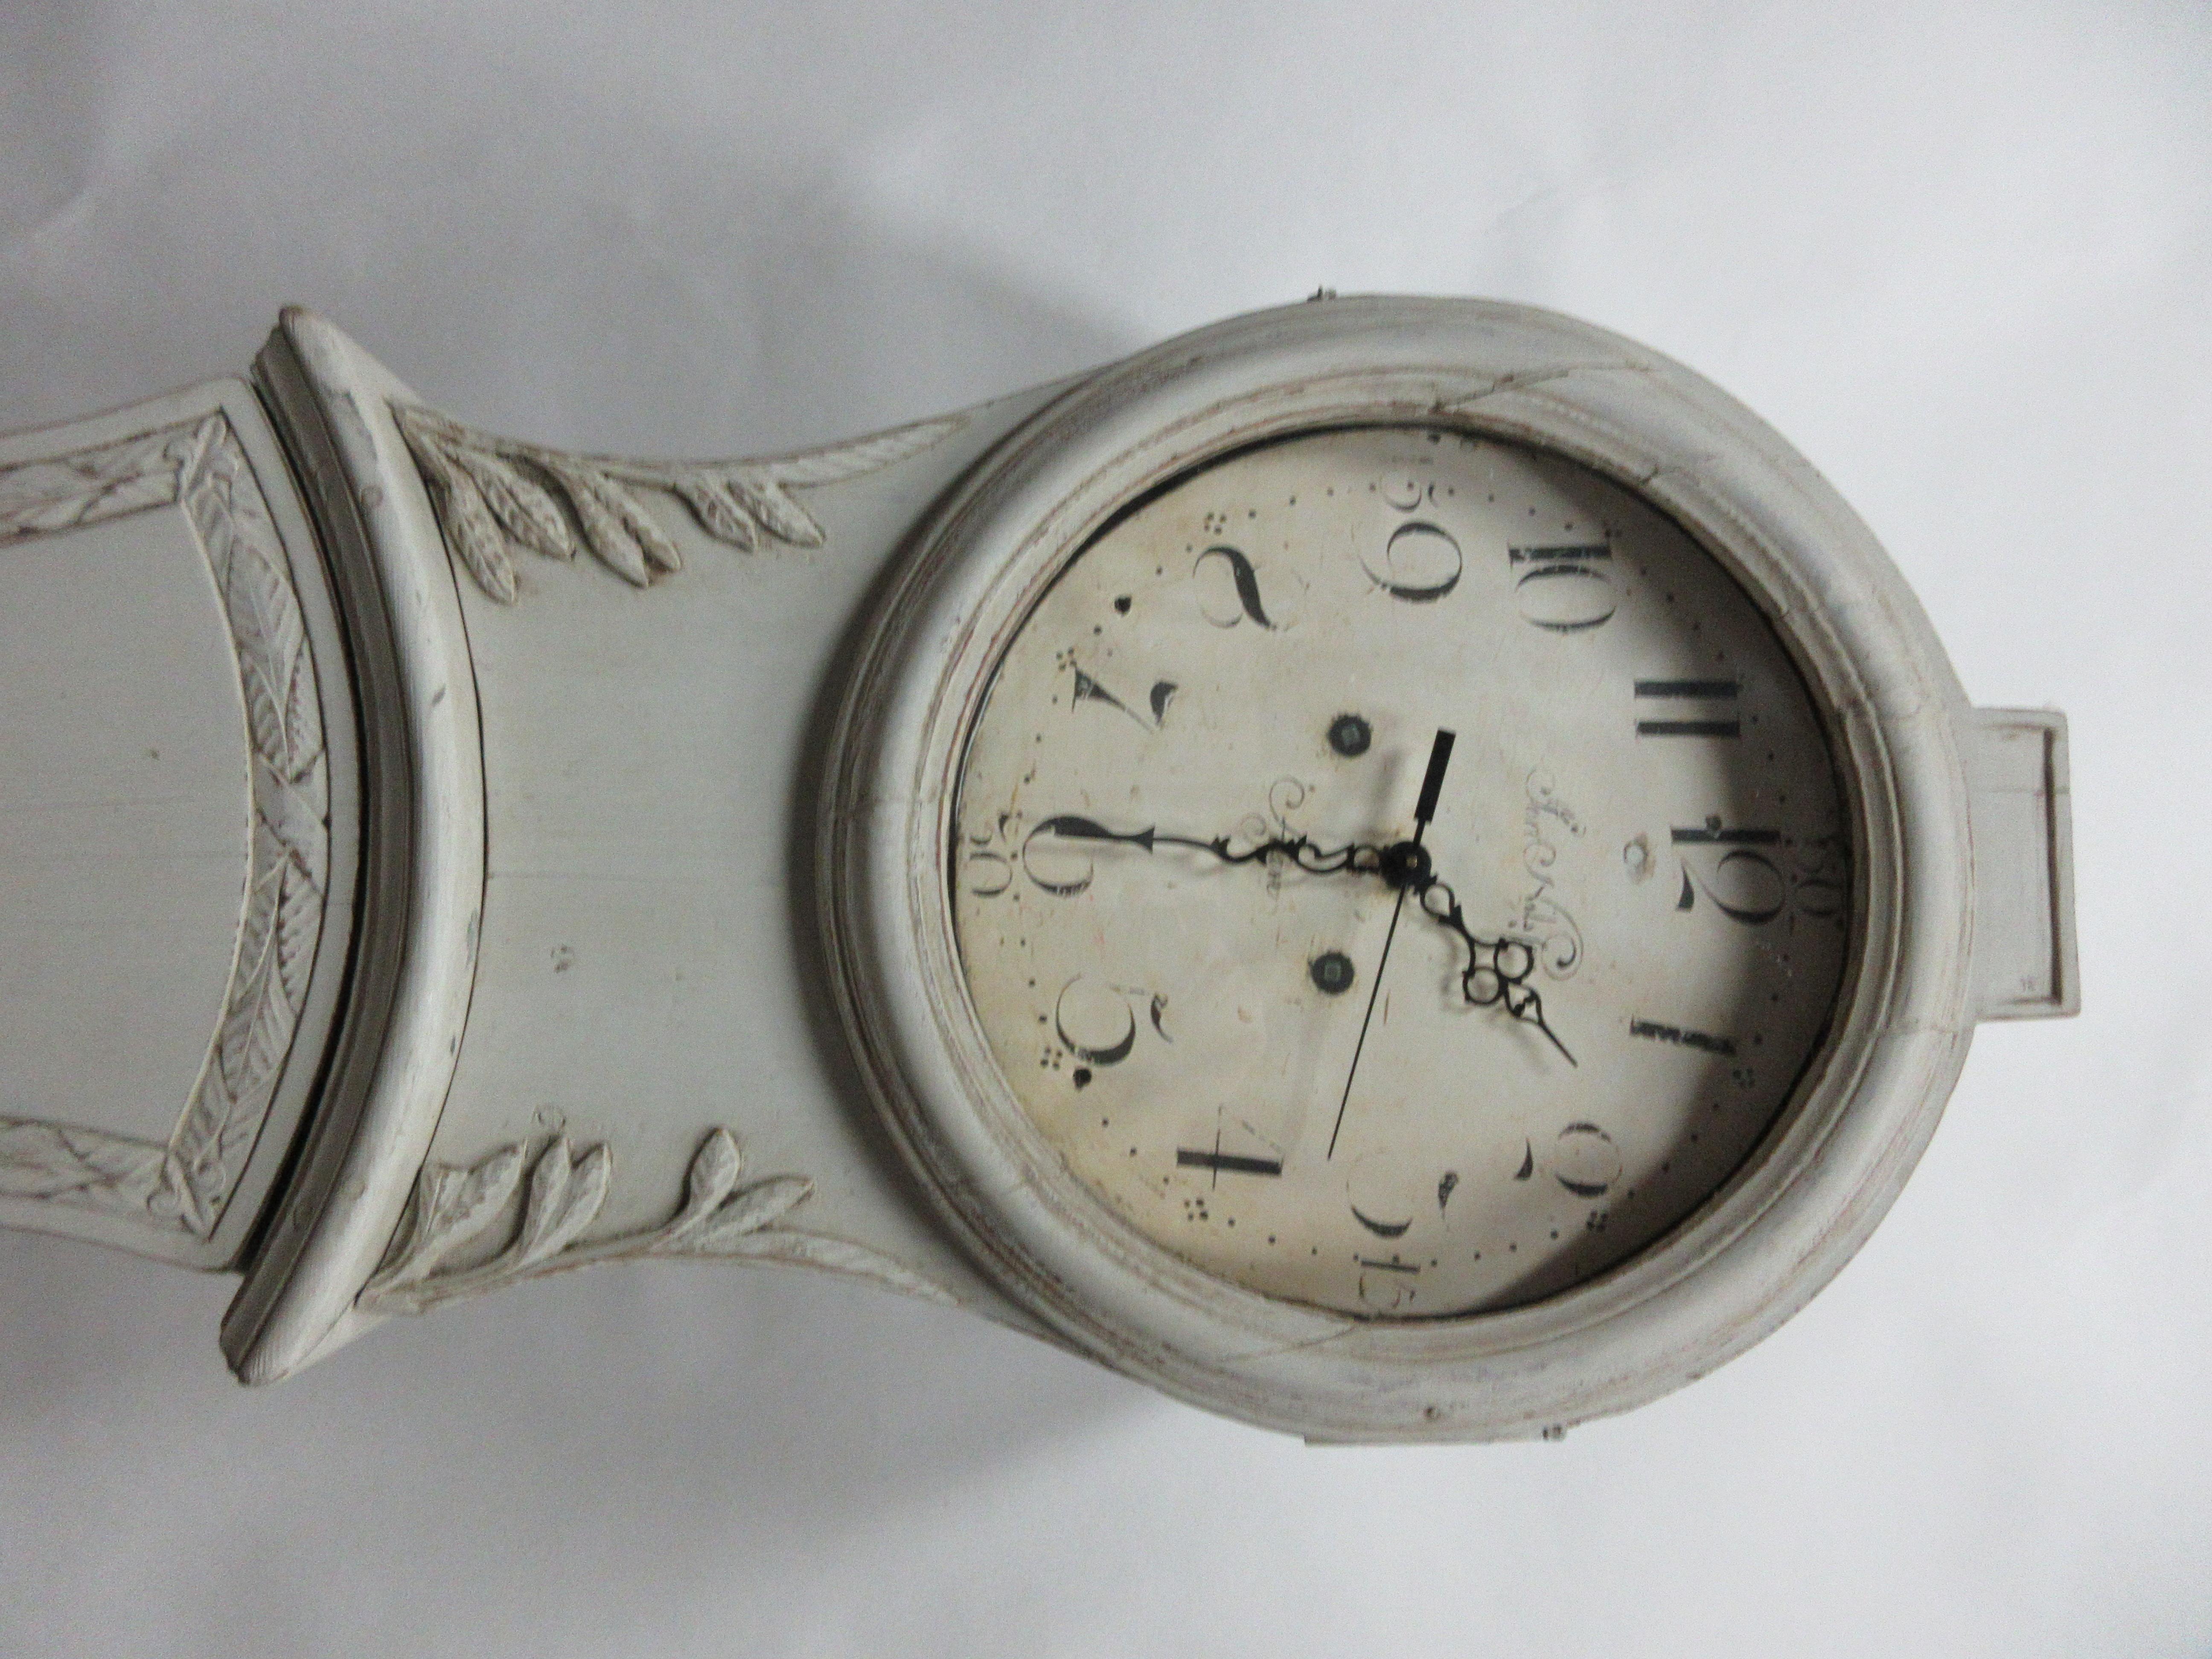 Il s'agit d'une horloge mora suédoise, modèle Jamtland, avec une sculpture unique sur le boîtier.